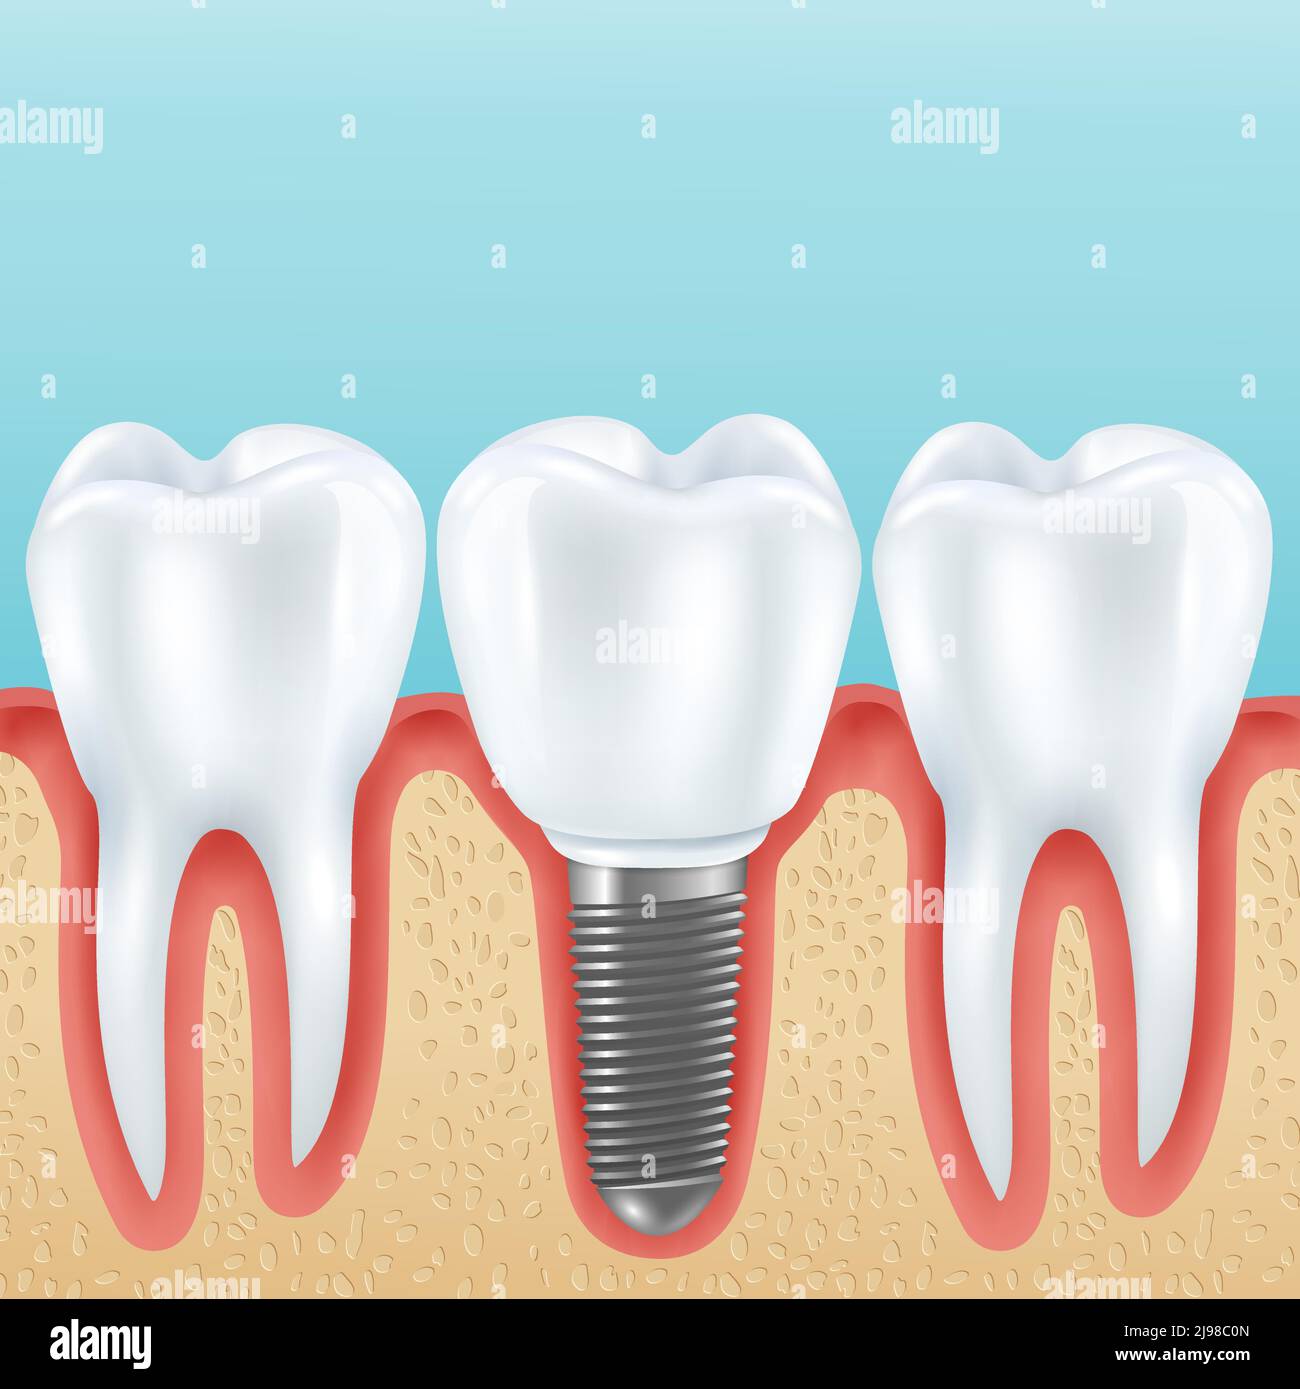 Prothèses dentaires illustration vectorielle réaliste avec dents et prothèses saines couronne implantée avec des implants Illustration de Vecteur